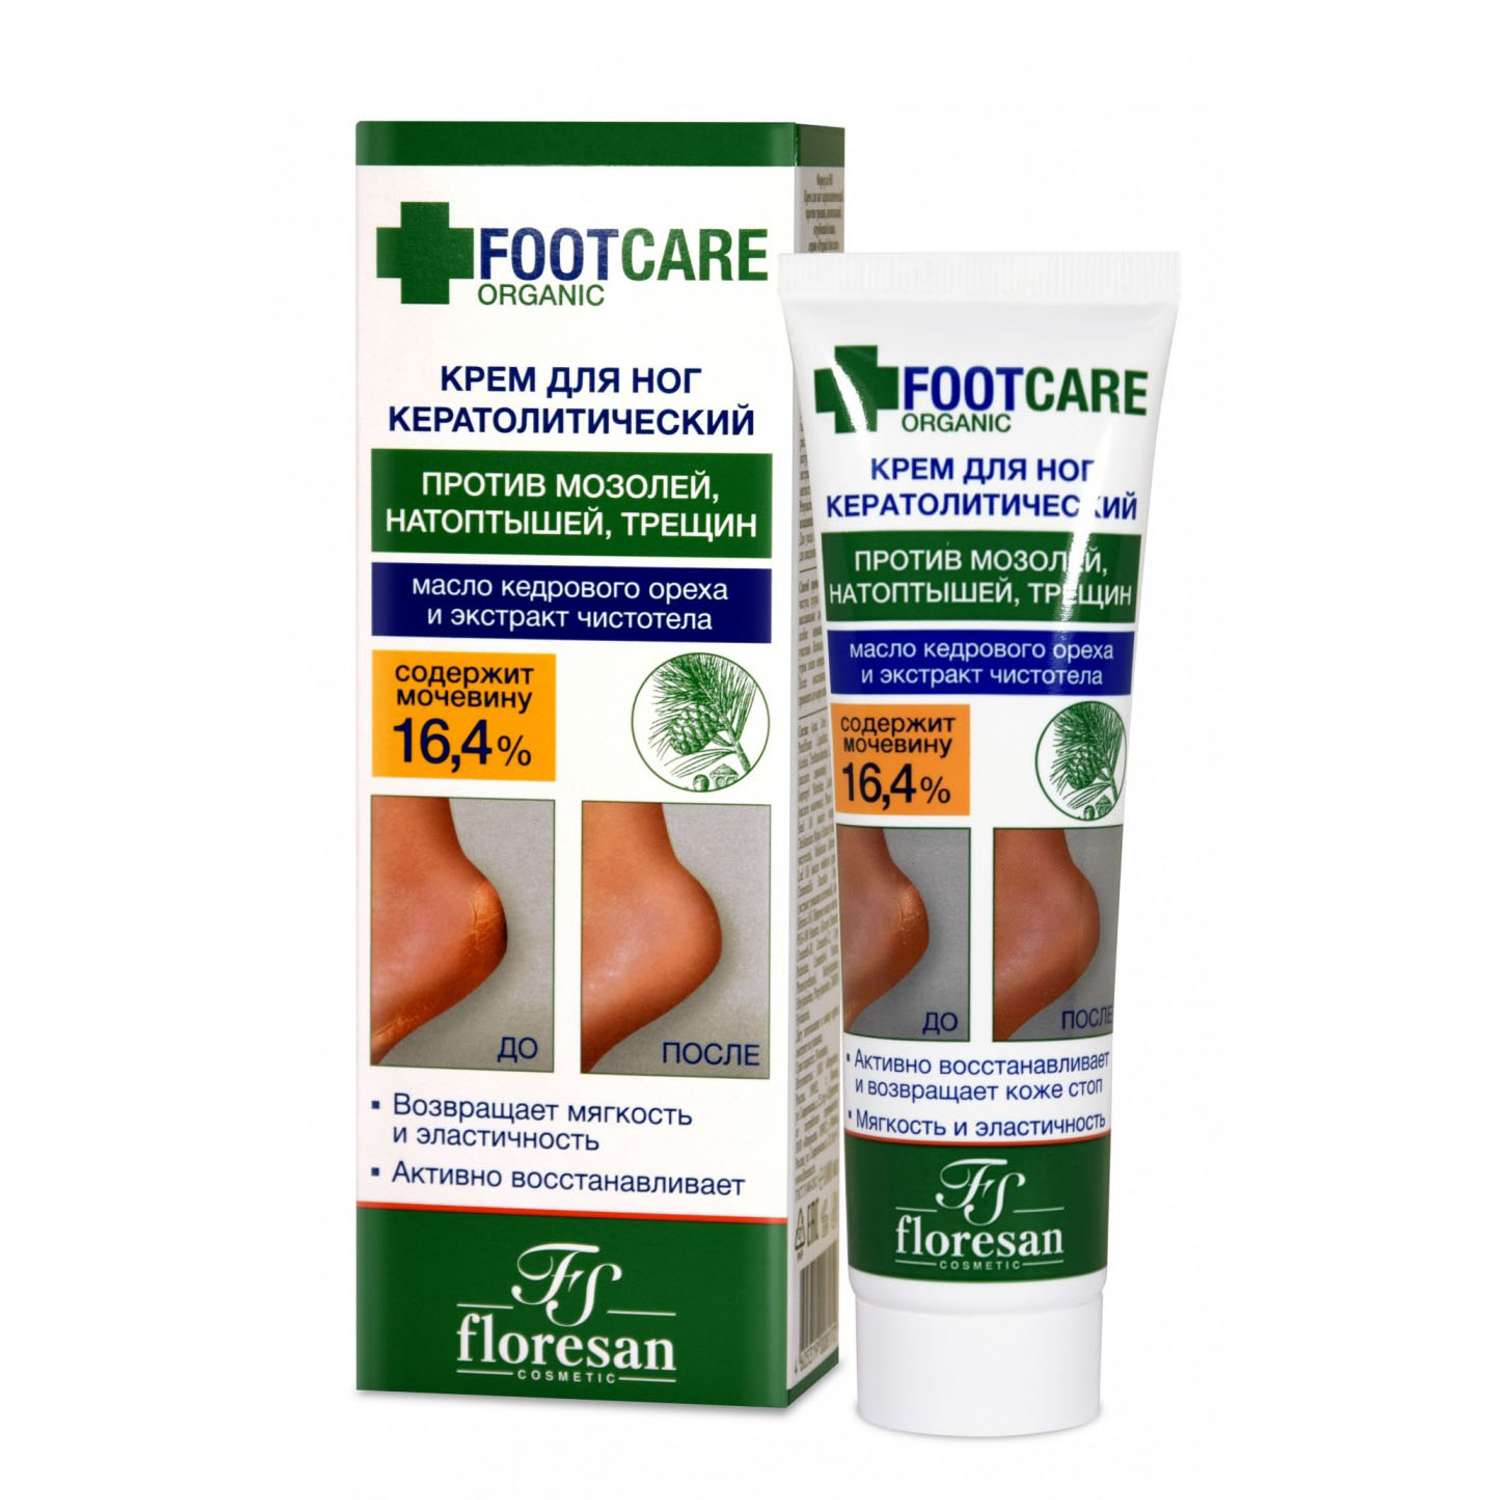 Крем для ног floresan кератолитический против трещин и натоптышей серии Organic foot care 100мл - фото 1